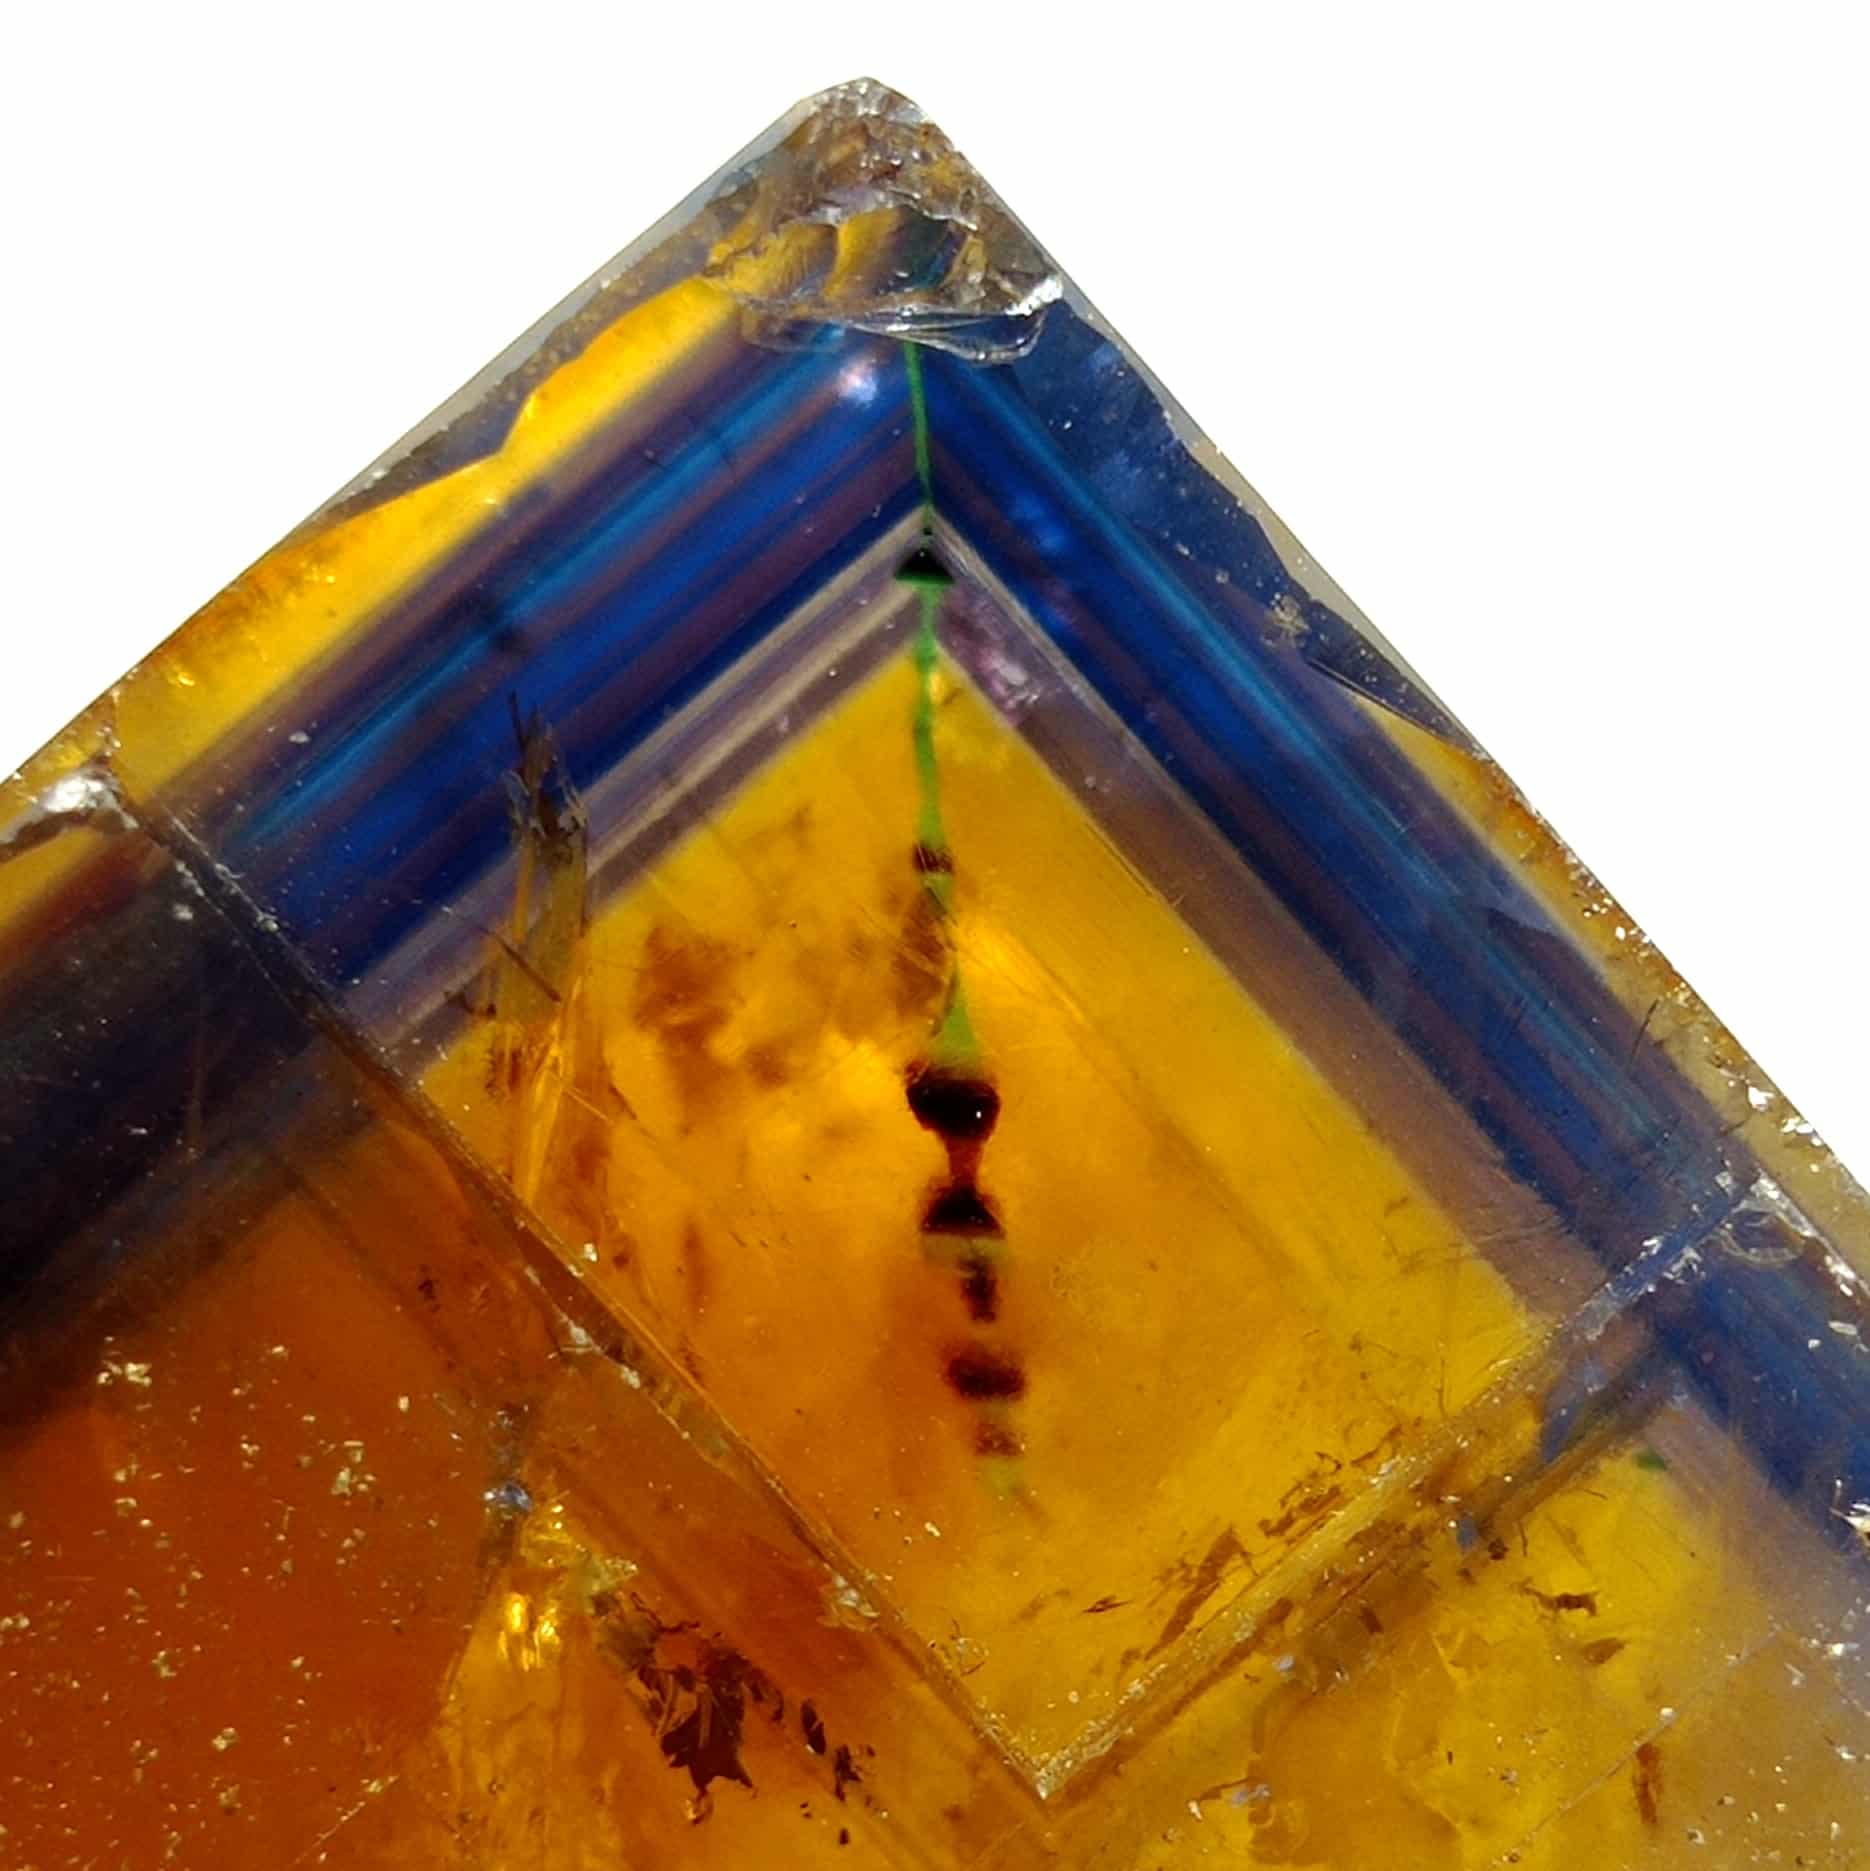 Fluorine (Fluorite), Filon jaune, Valzergues, Aveyron.